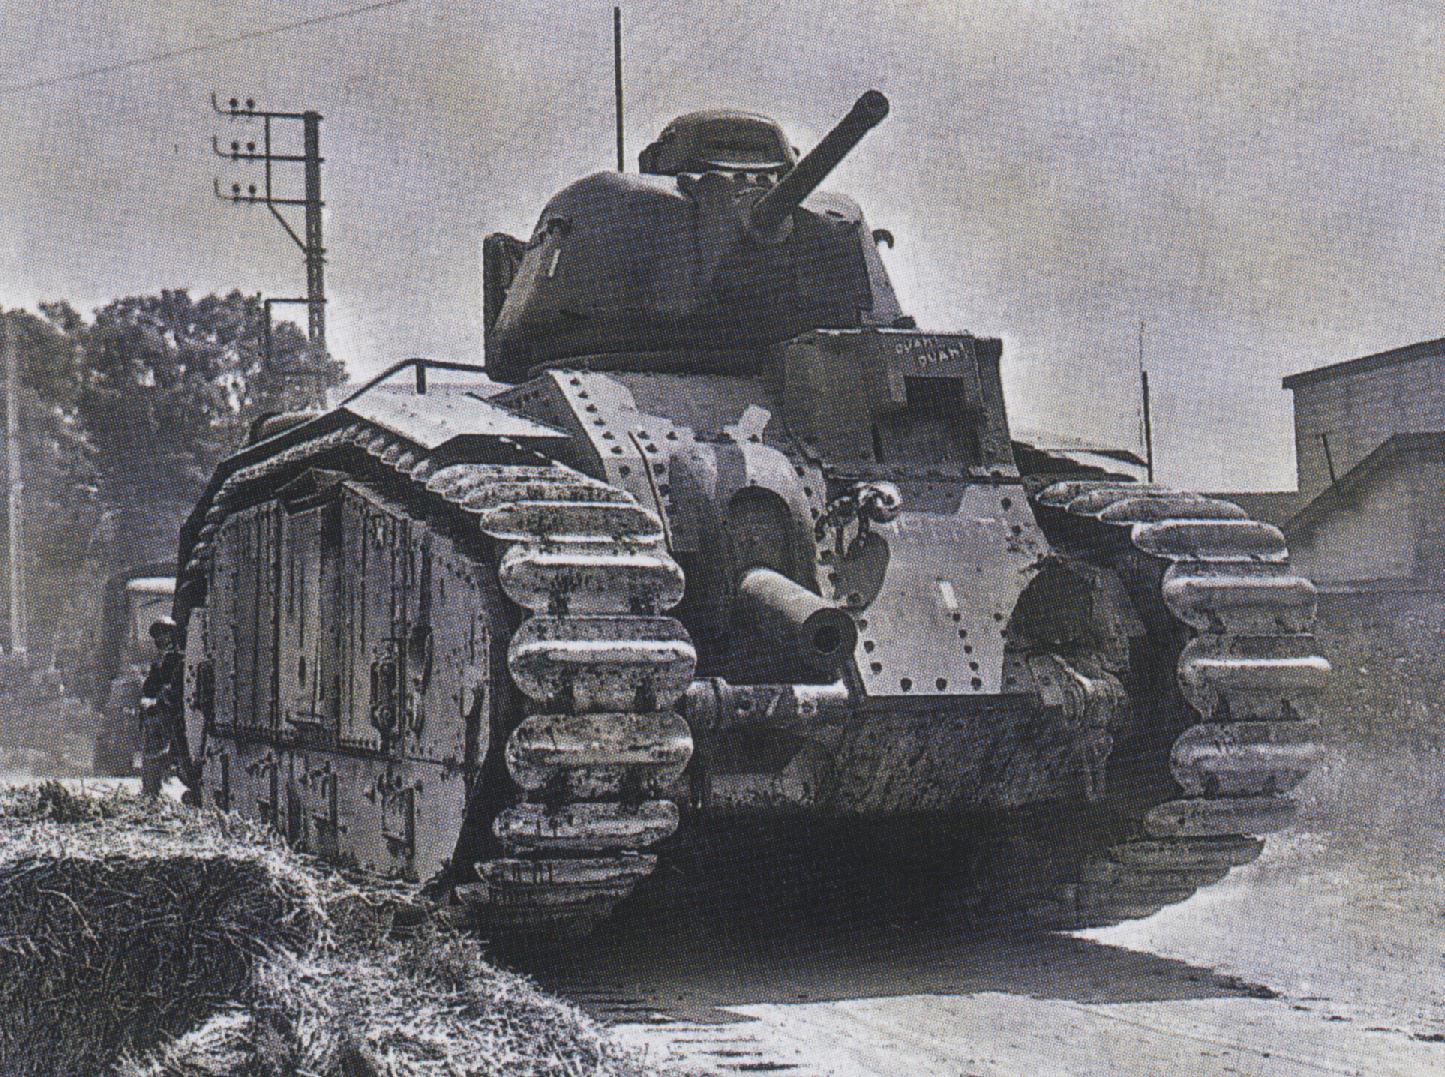 Французов б в. Тяжелый французский танк Char b1. Французский танк в1 второй мировой войны. Французский танк b1 bis. Char b1 bis танк.